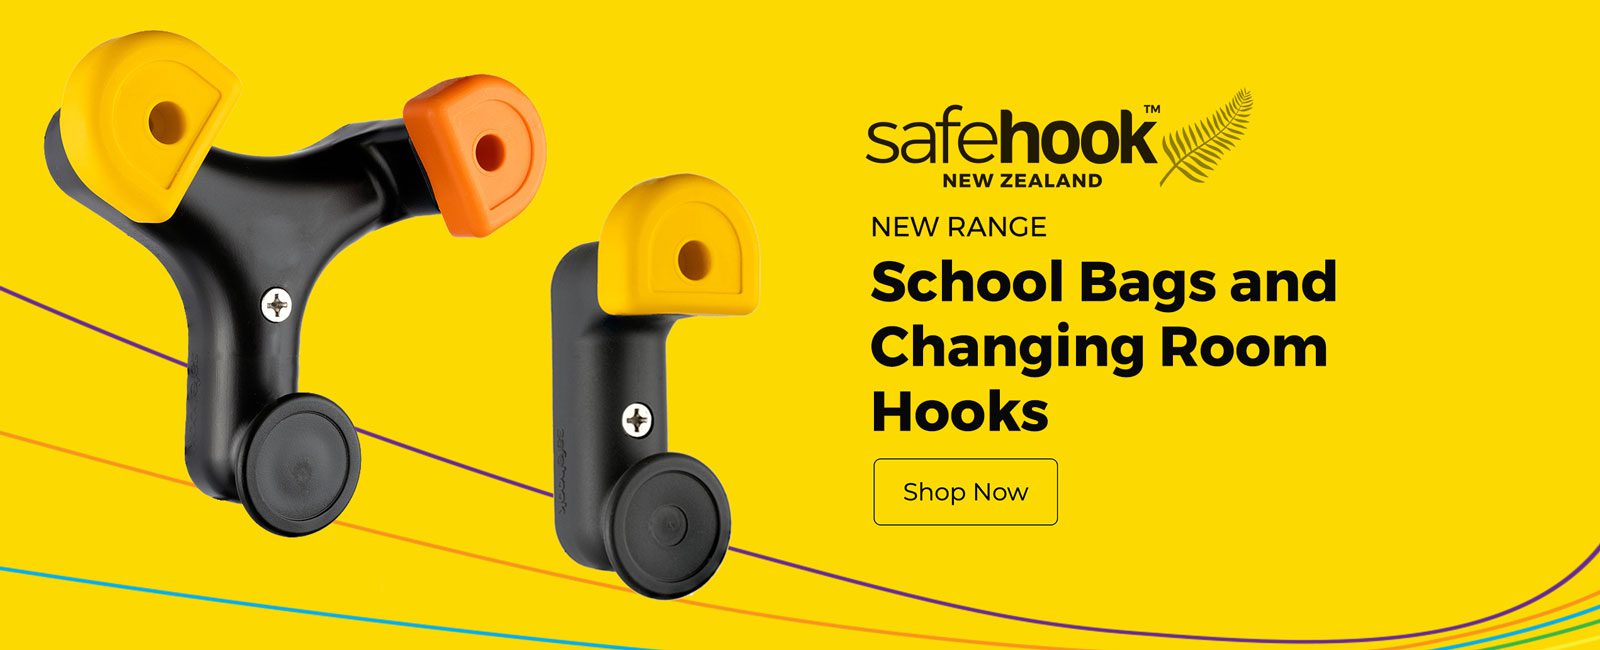 SafeHook - School Bag, Changing Room Hooks